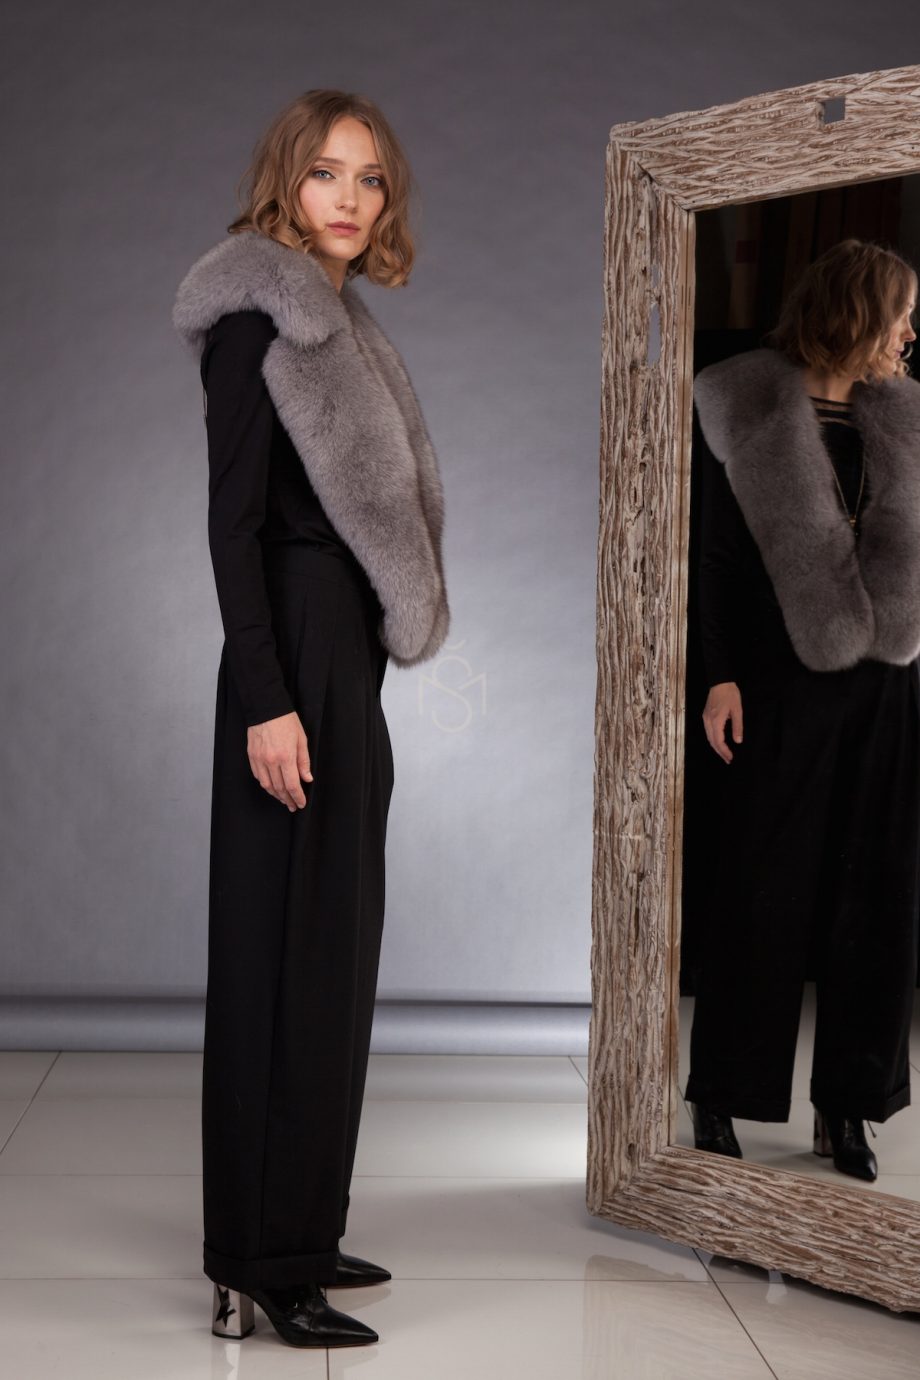 Fox fur collar, color gray made by SILTA MADA fur studio in Vilnius